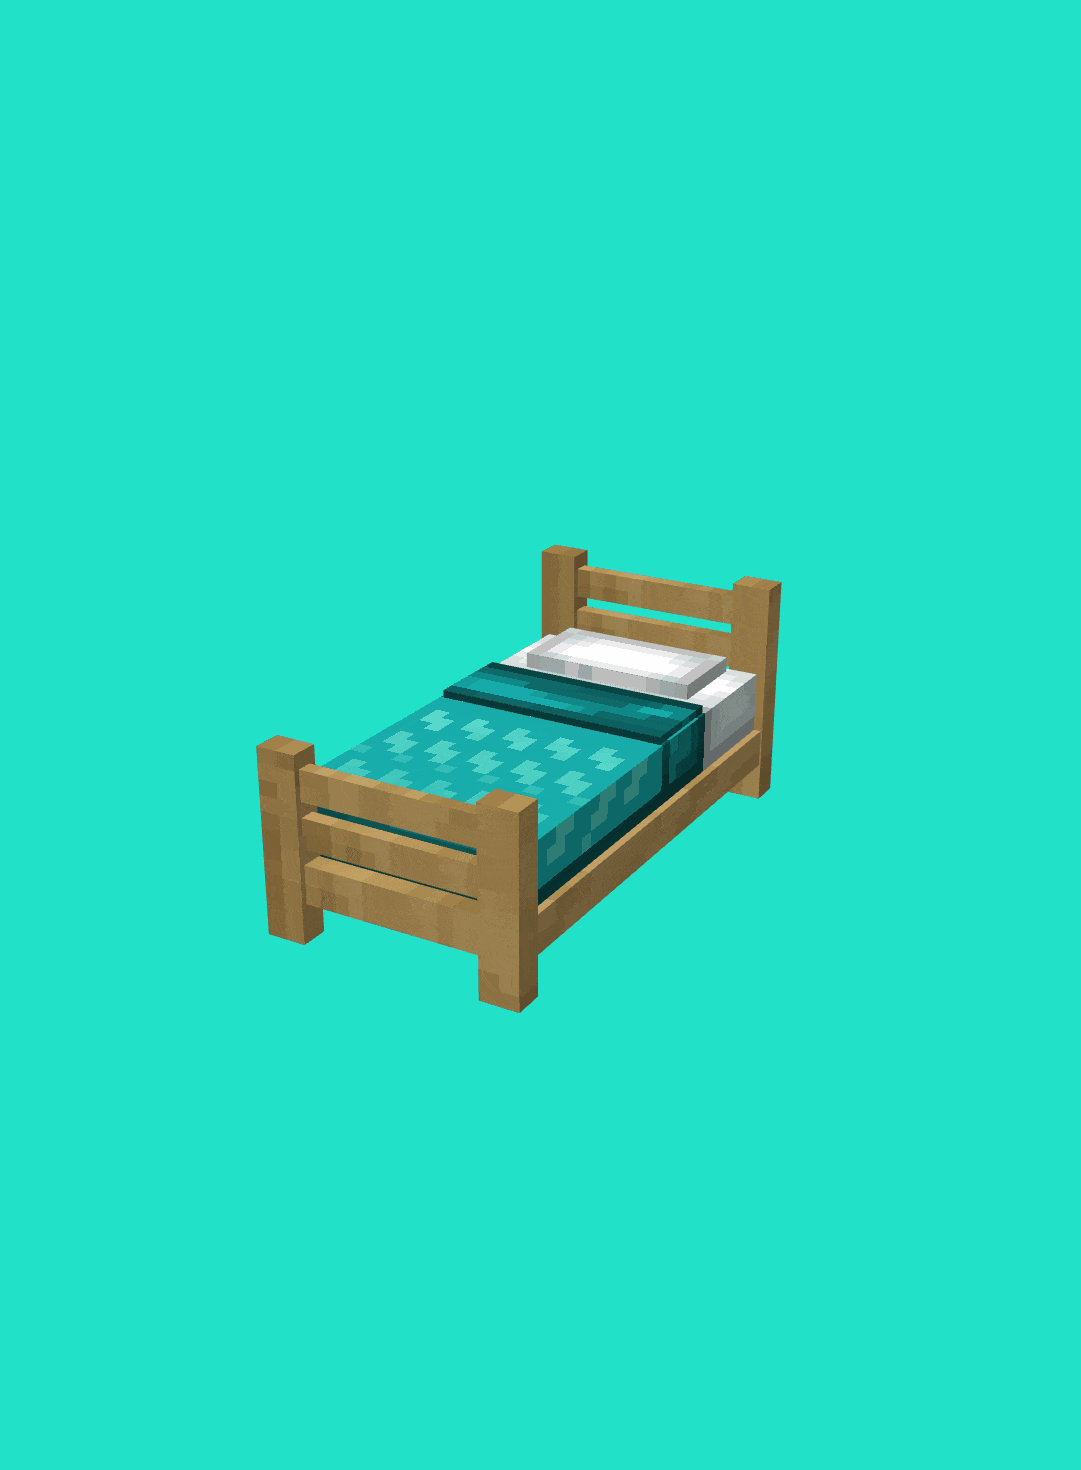 Моделька кровати с узорами